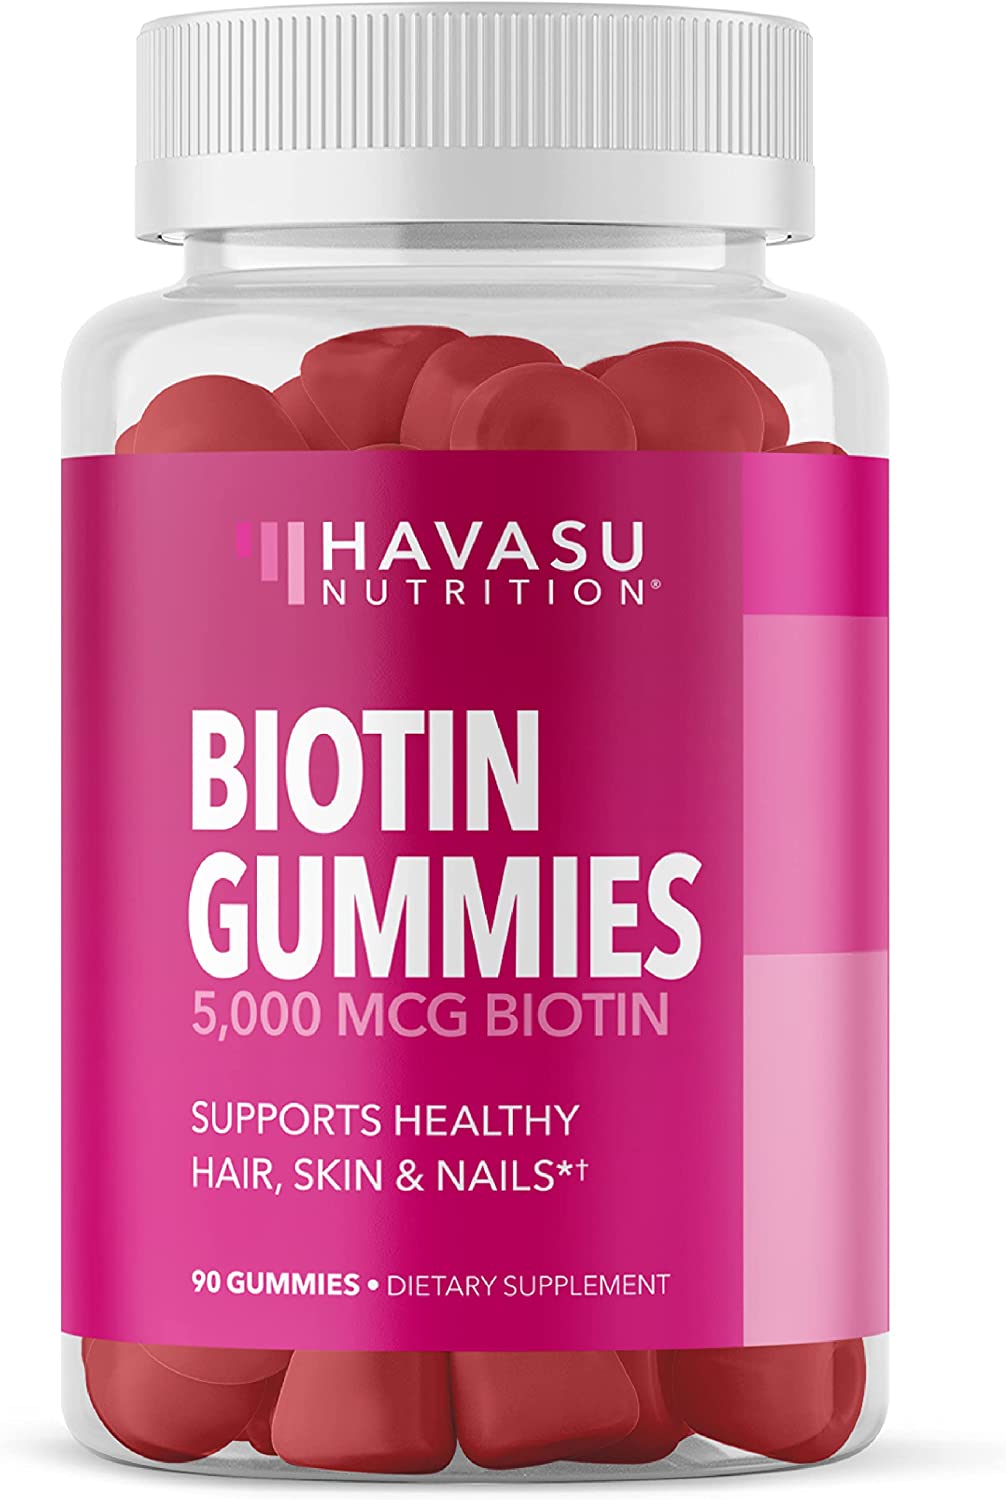 Havasu Nutrition Kosher Healthy Biotin Gummy Supplement, 5,000-mcg